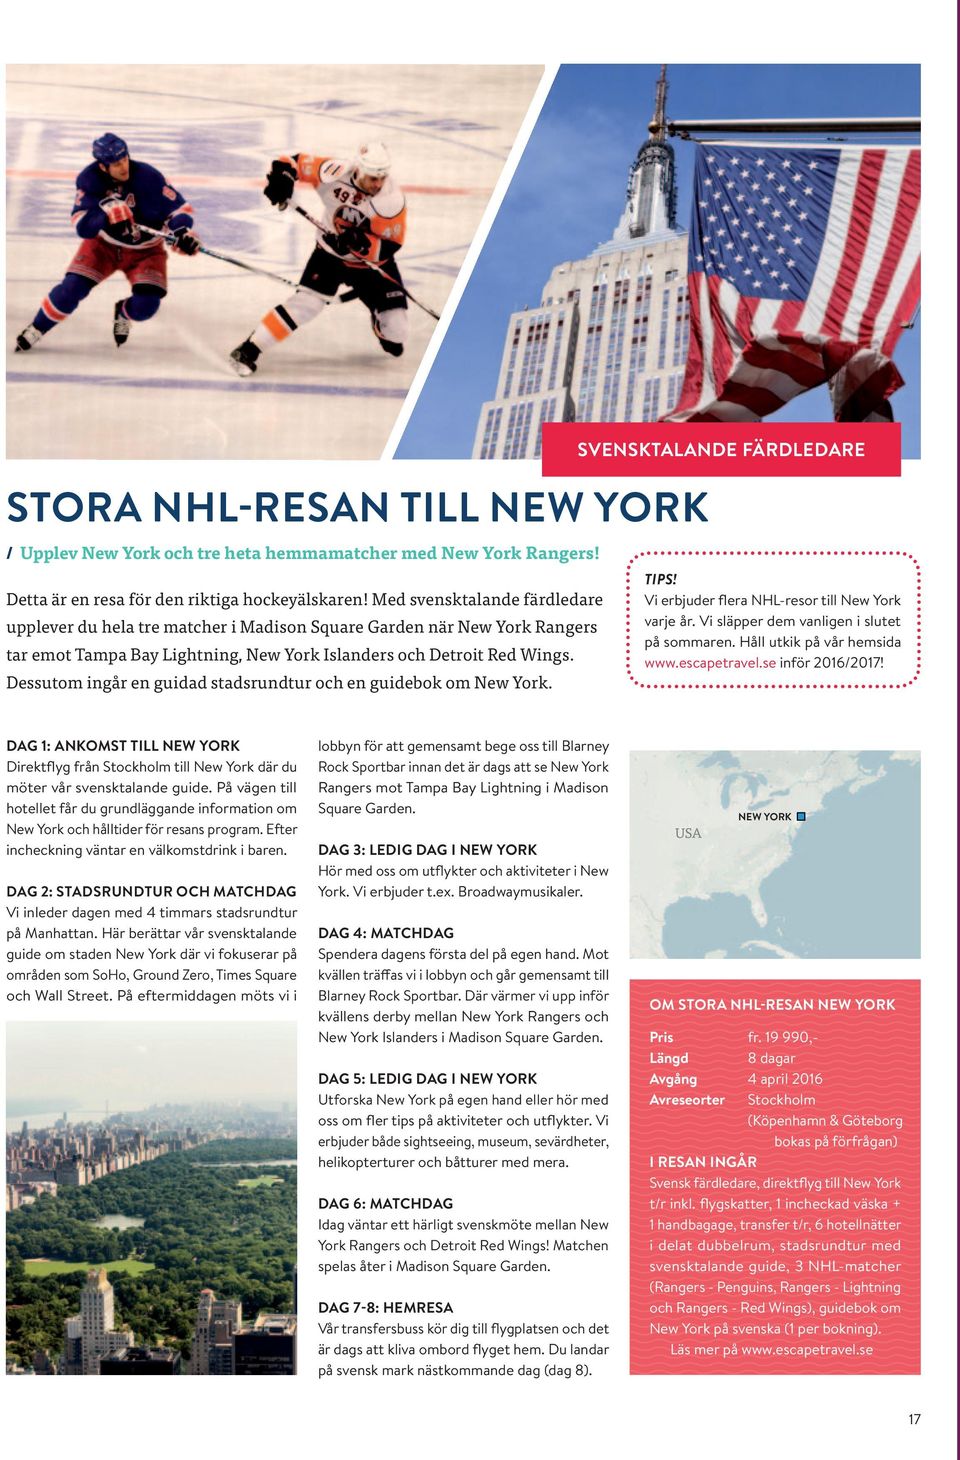 Dessutom ingår en guidad stadsrundtur och en guidebok om New York. tips! Vi erbjuder flera NHL-resor till New York varje år. Vi släpper dem vanligen i slutet på sommaren.